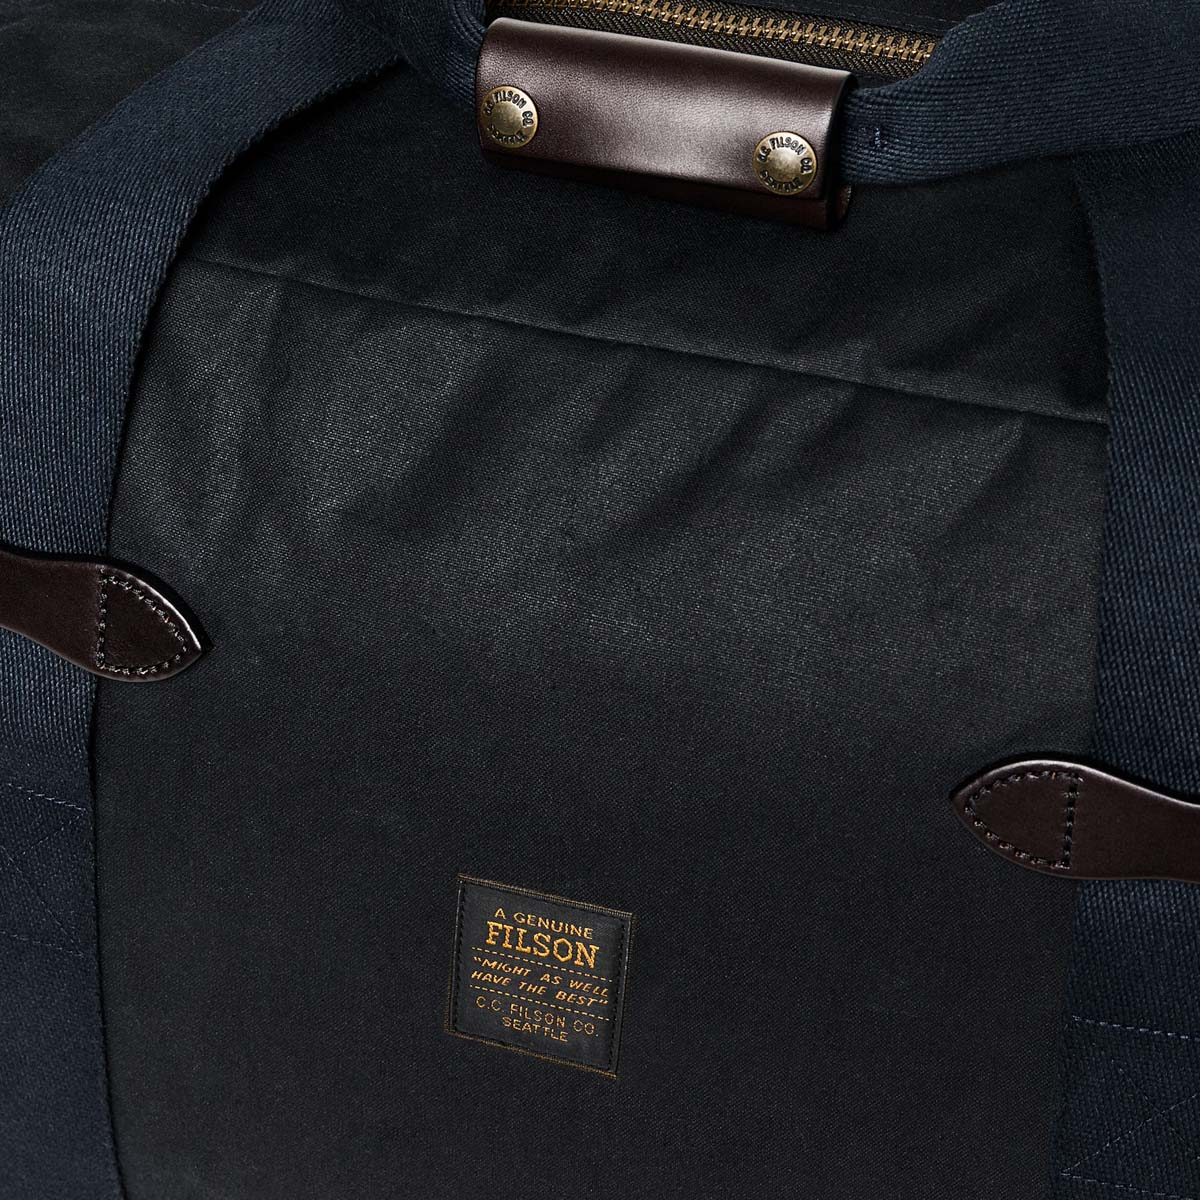 Filson Tin Cloth Medium Duffle Bag Navy, eine kompakte Duffle aus gewachster Baumwolle für Reisen über Nacht.